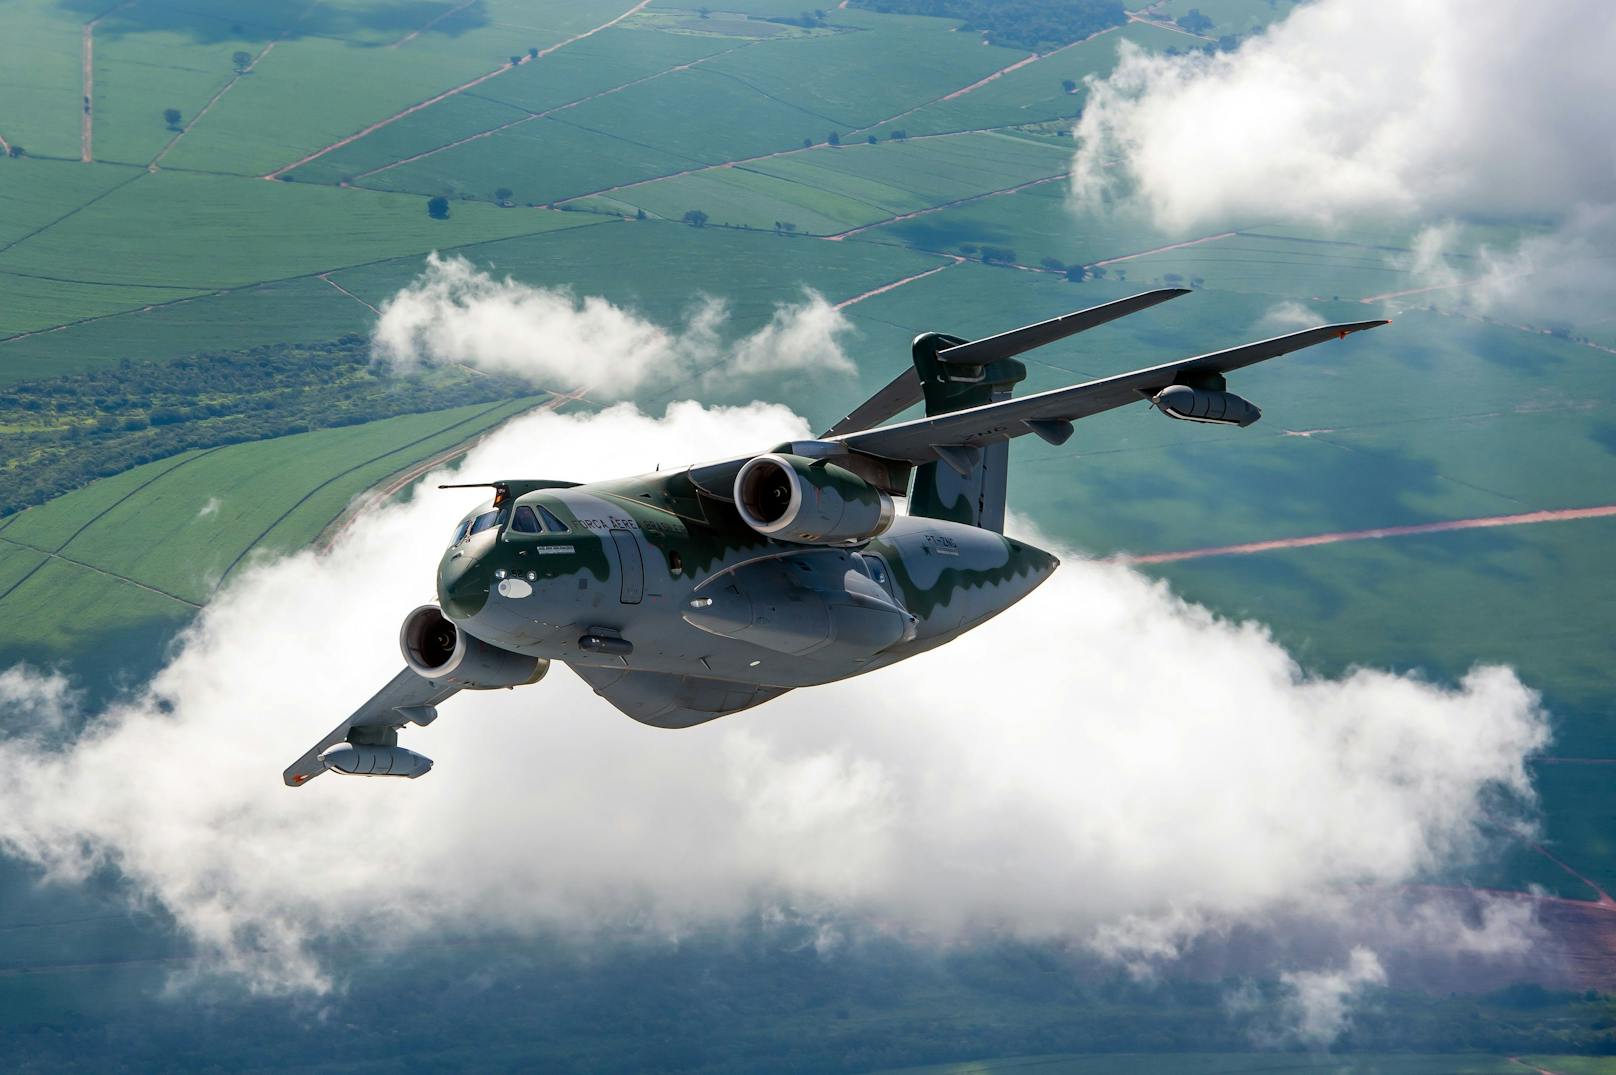 Österreichs Bundesheer wird vier <strong>C-390 "Millennium"</strong> (im Bild) des brasilianischen Flugzeugbauers <strong>Embraer</strong> kaufen.